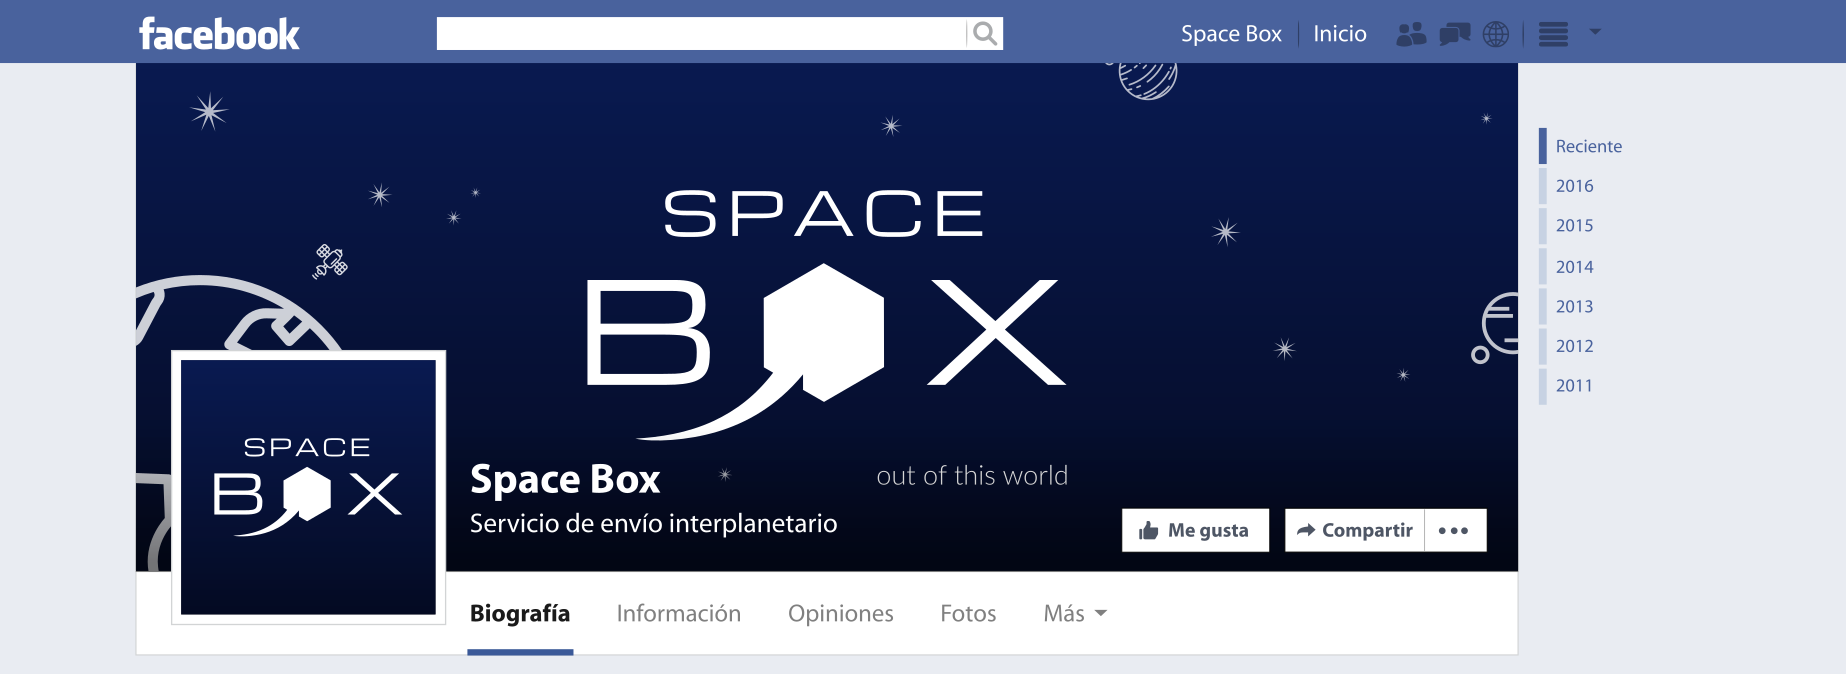 spacebox_mockup_facebook_page.png